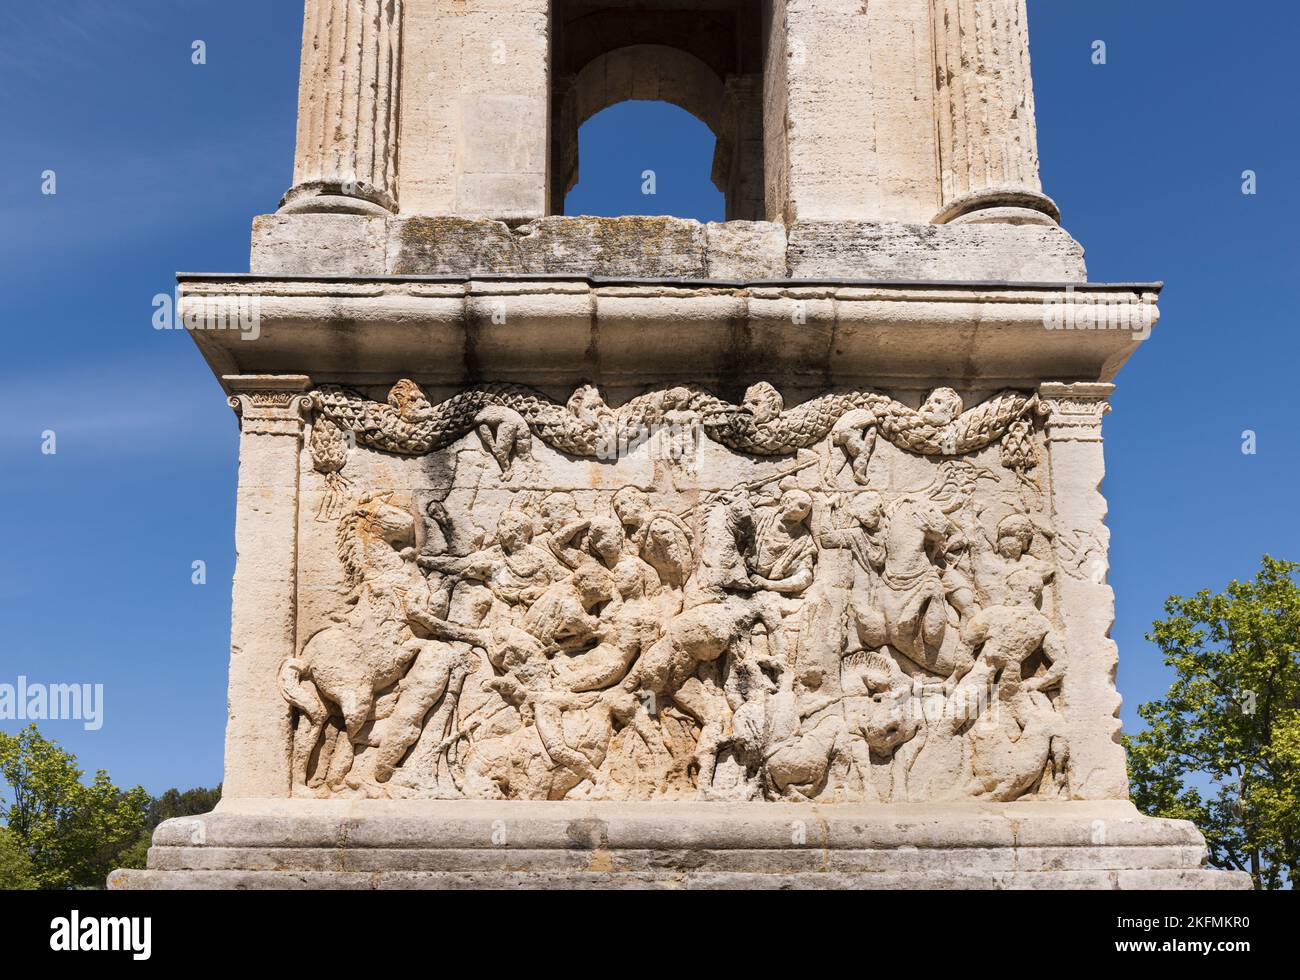 Saint-Rémy-de-Provence, Bouches-du-Rhône, Provence, Frankreich. Fries der Kampfszene auf dem Podium des Mausoleums. Die Struktur stammt aus der Zeit um 30 v. Chr. Stockfoto